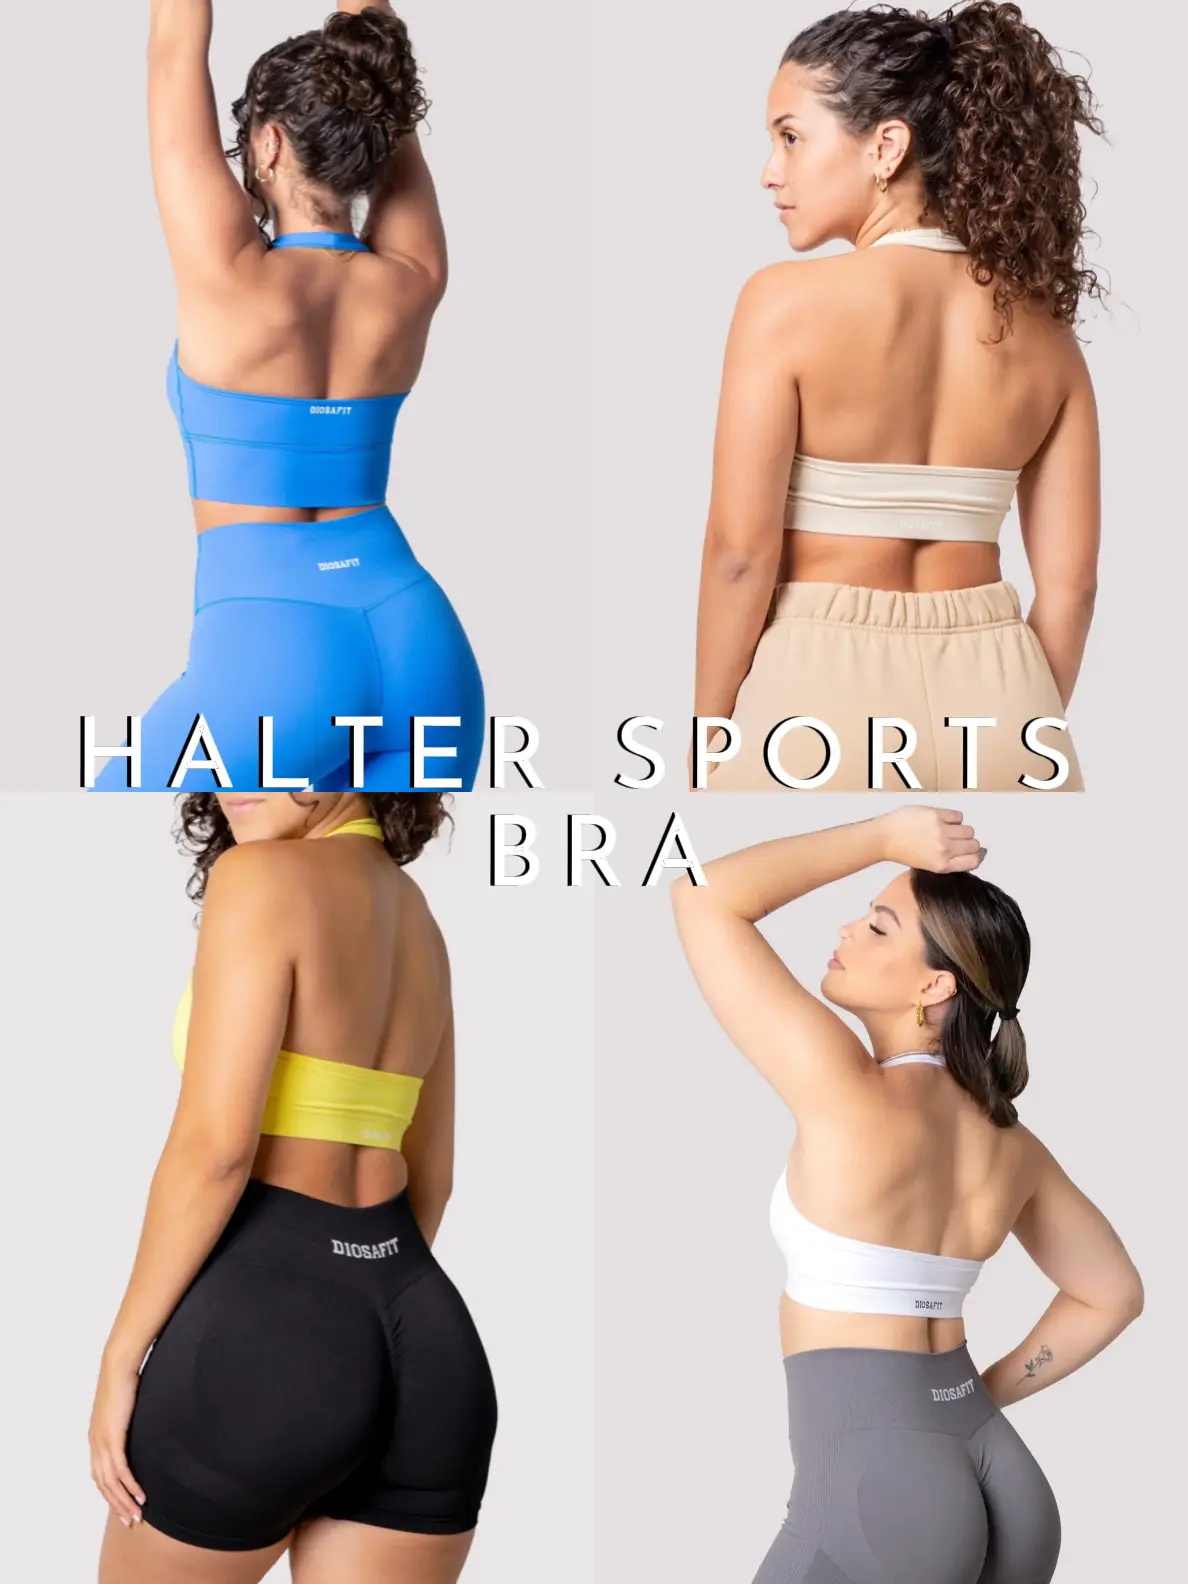 halter sports - Lemon8 Search